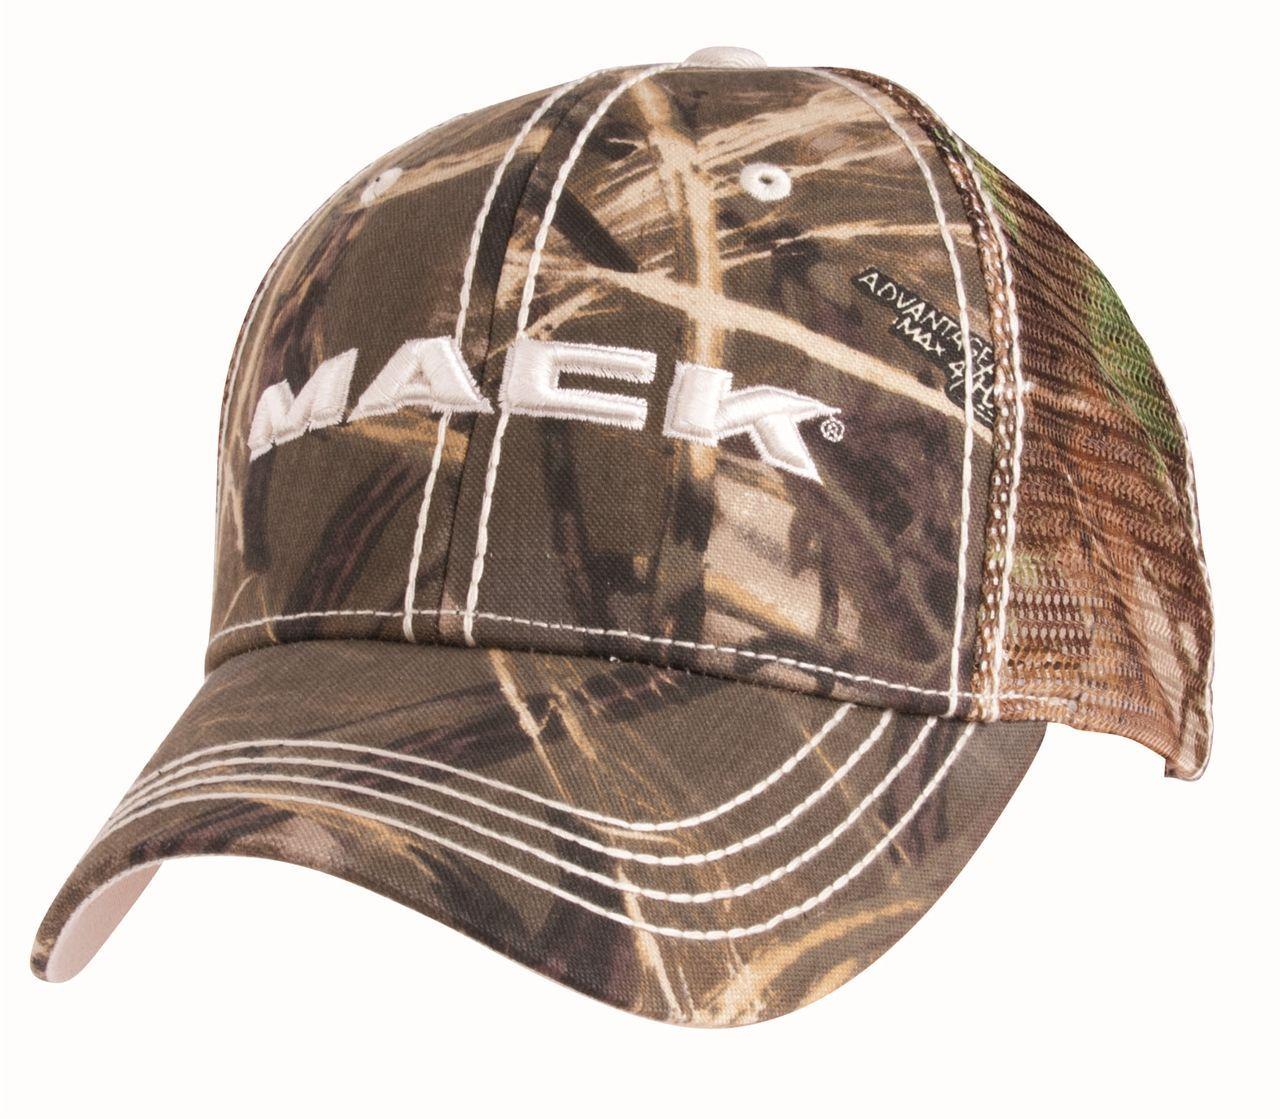 Camo Mack Logo - Mack front grill logo camo mesh cap | hats | Cap, Mesh cap, Mack trucks